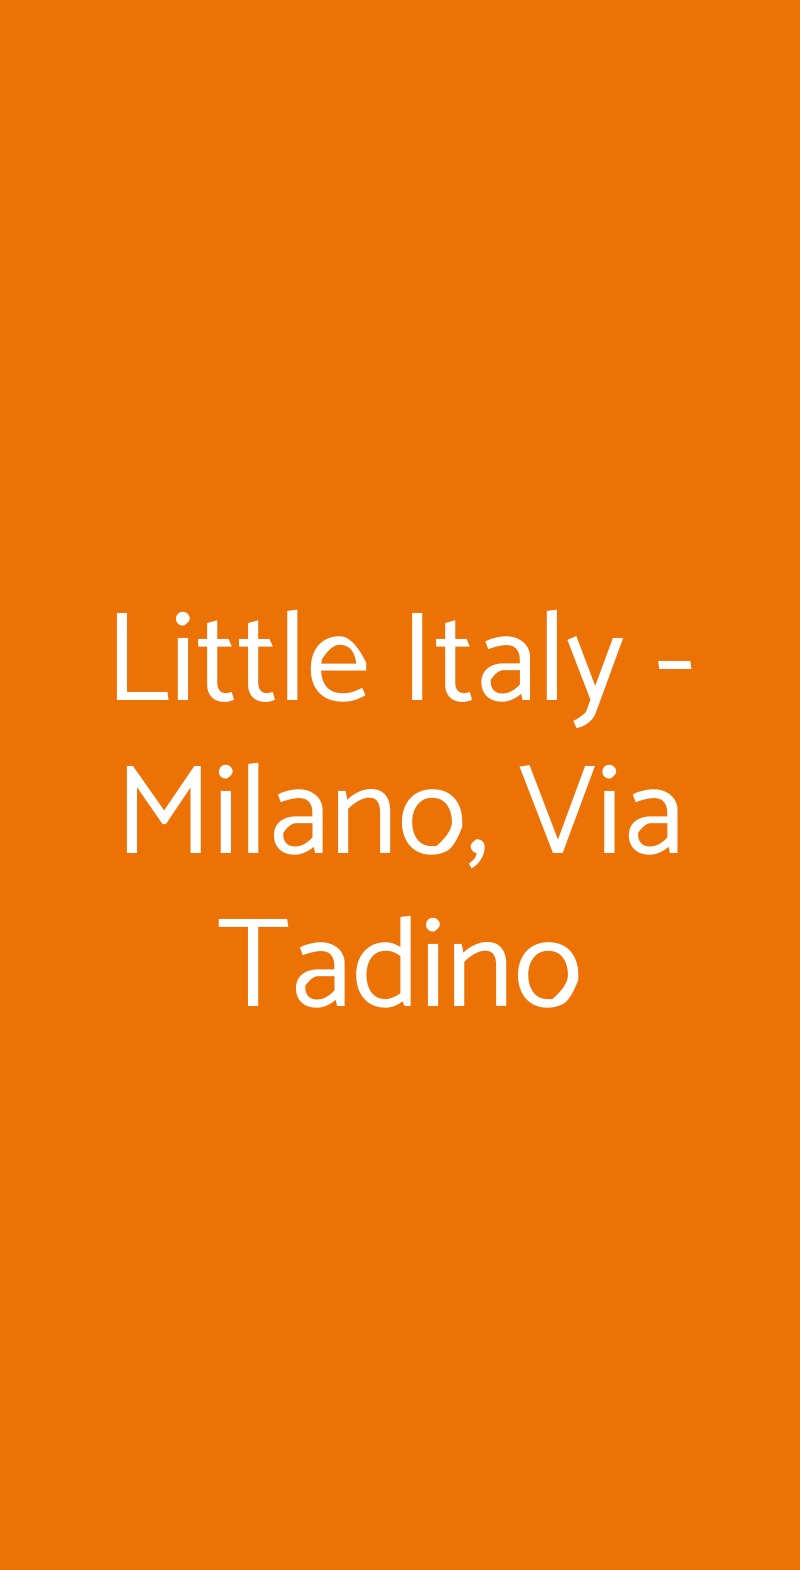 Little Italy - Milano, Via Tadino Milano menù 1 pagina